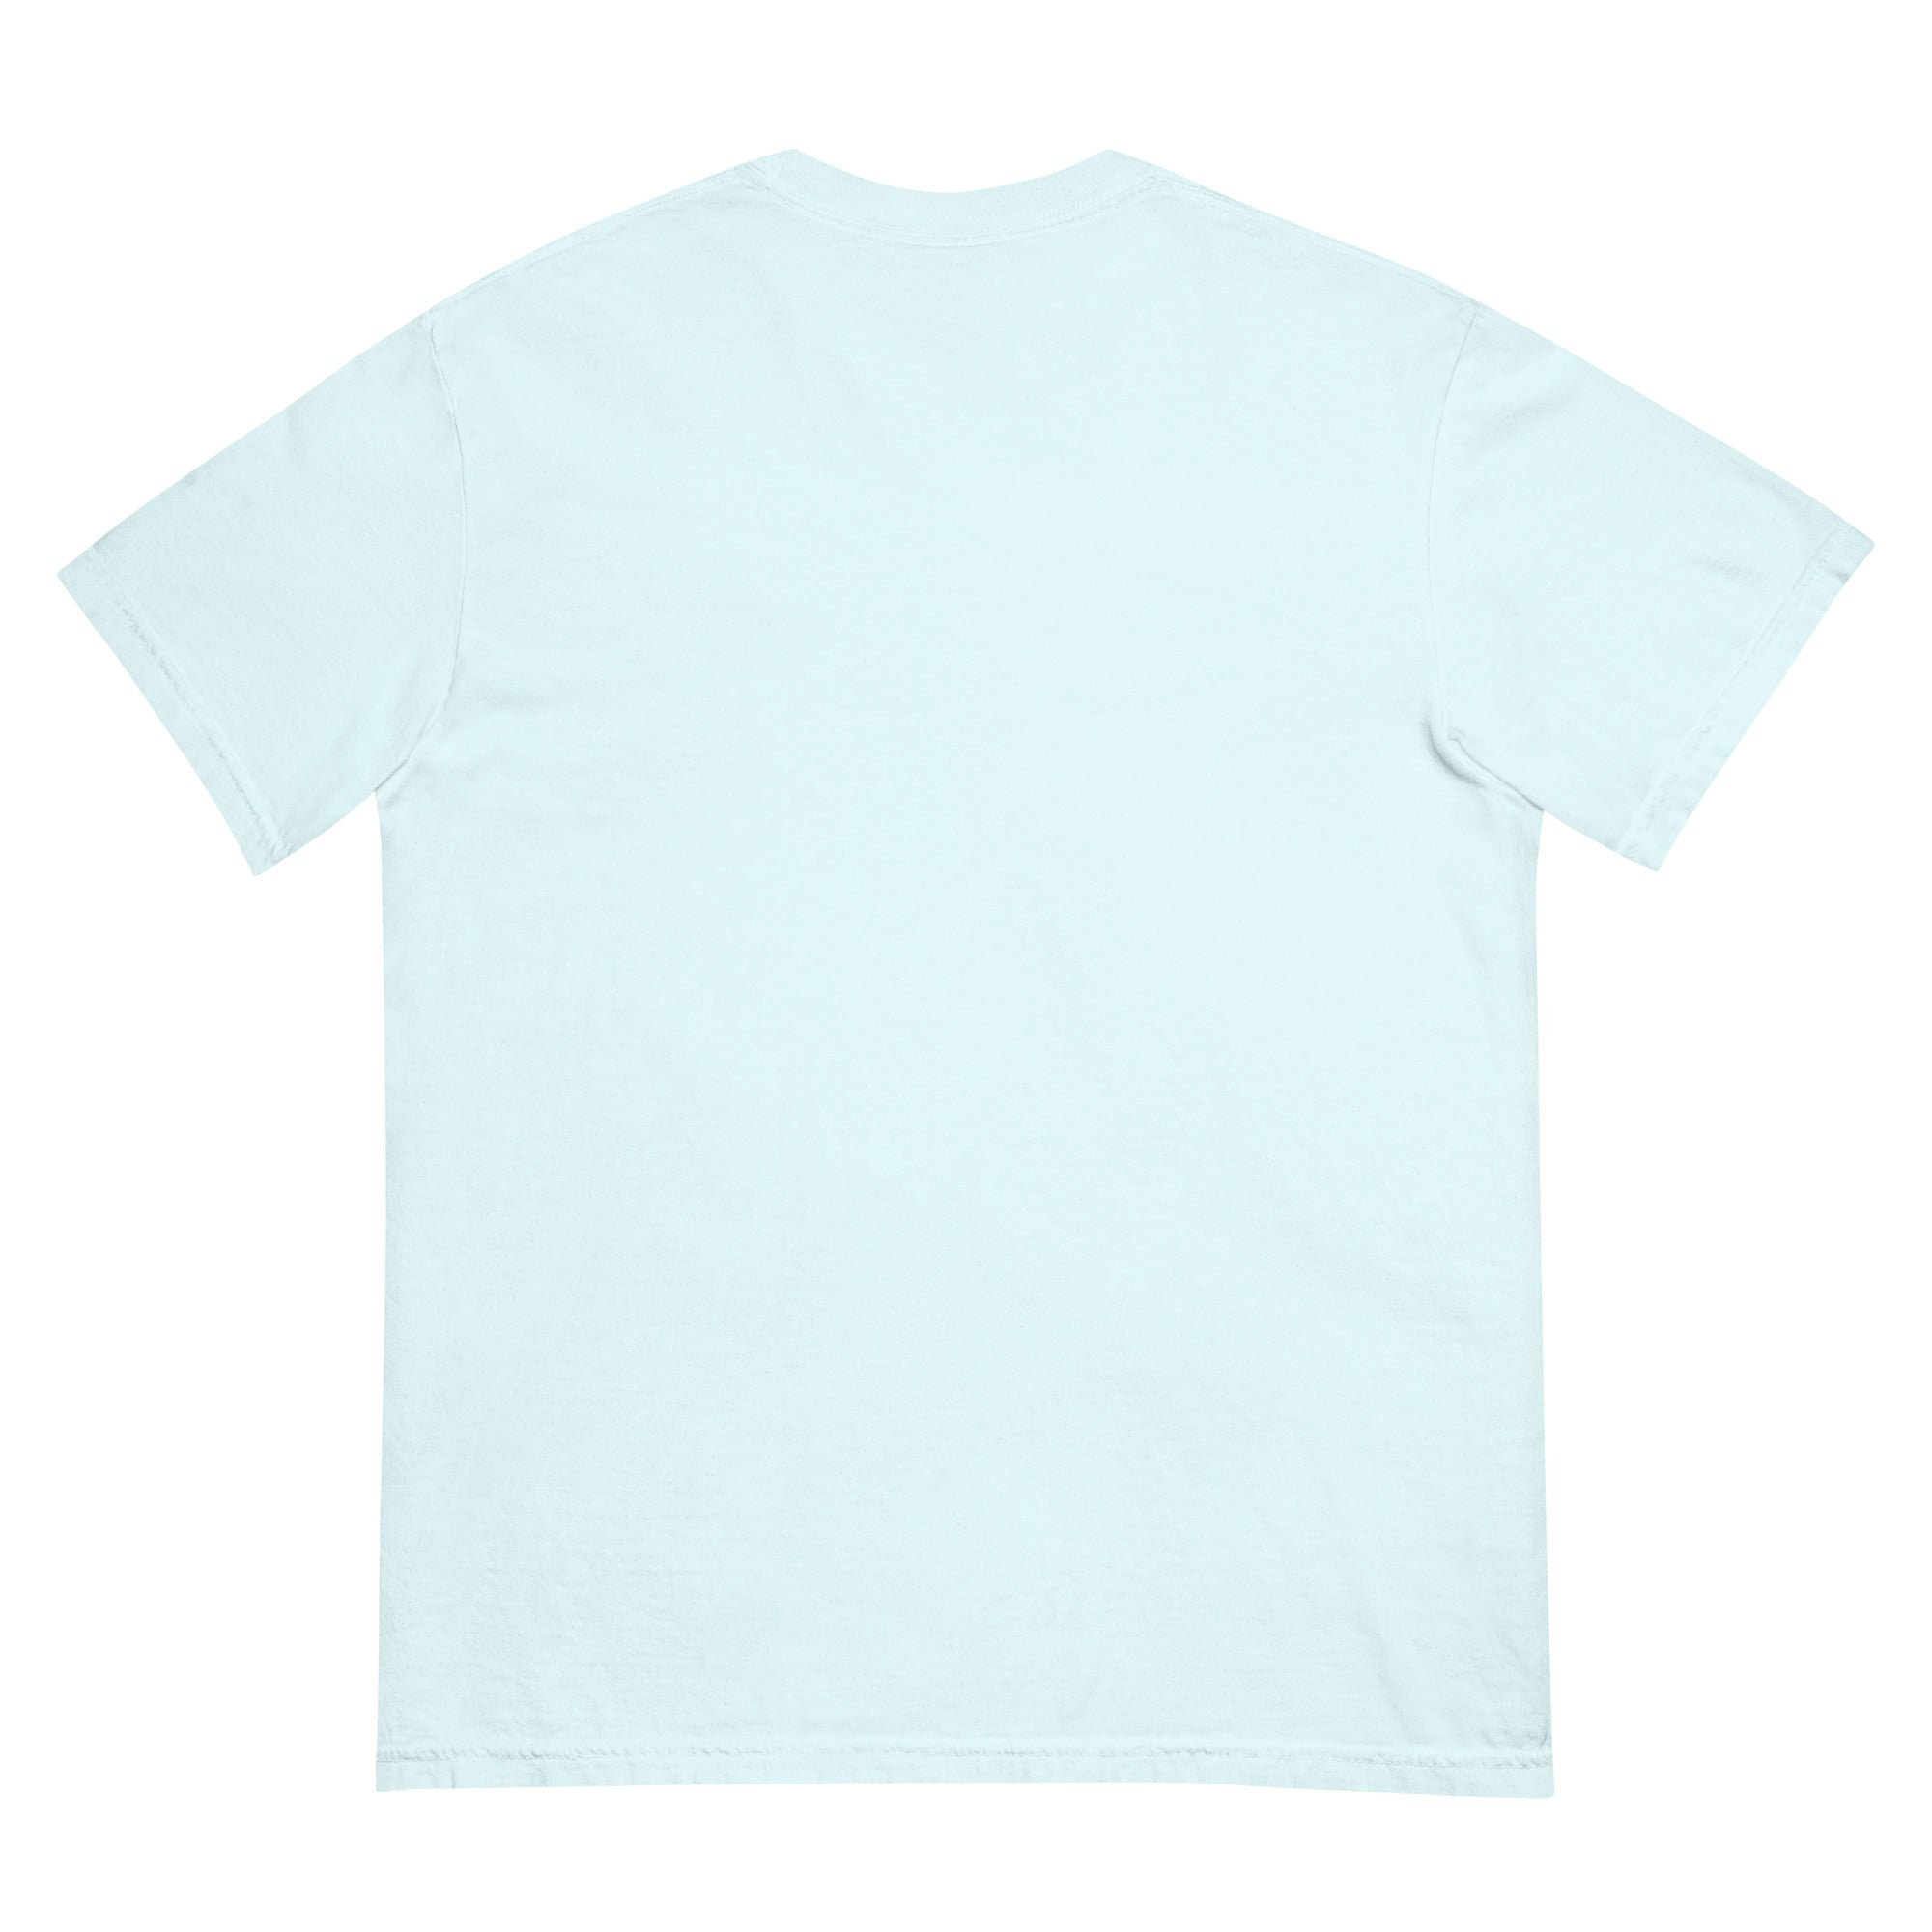 Garment-dyed heavyweight t-shirt